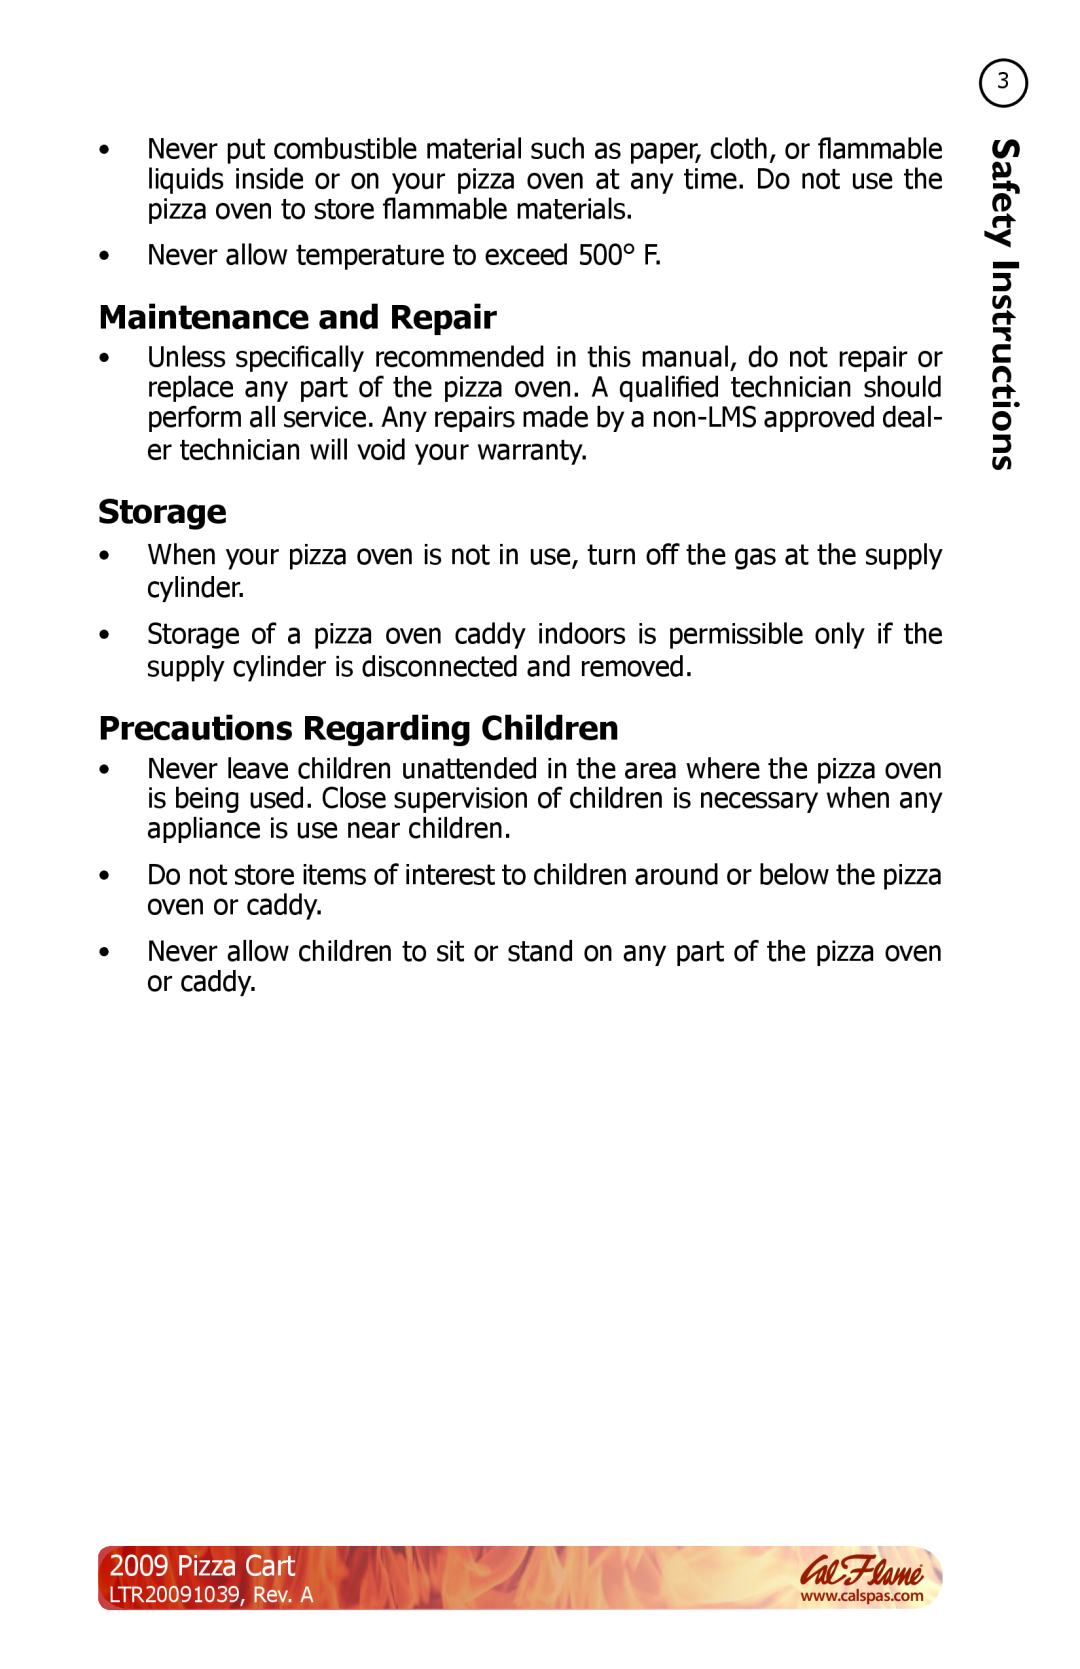 Cal Flame LTR20091039 manual Maintenance and Repair, Storage, Precautions Regarding Children, Pizza Cart 